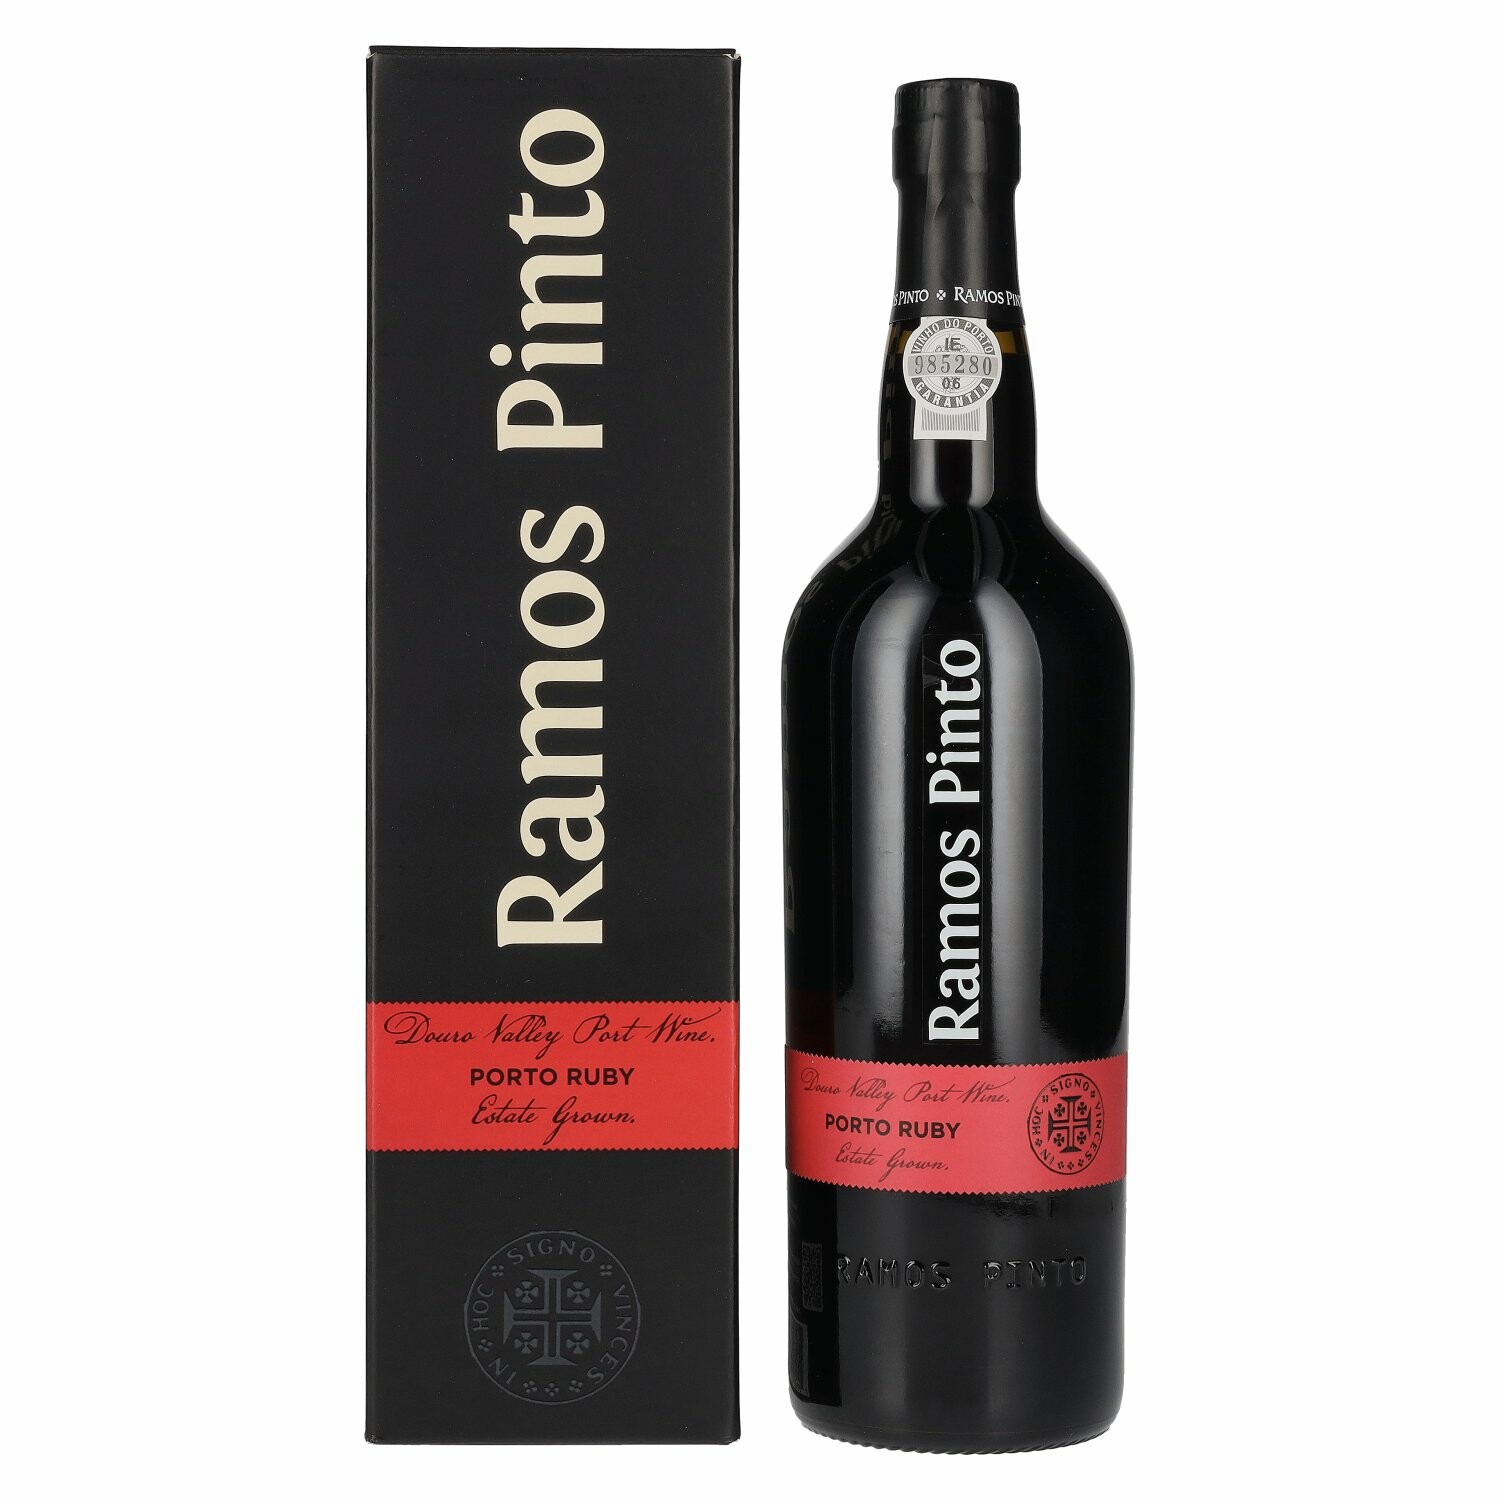 Ramos Pinto Fine Porto Ruby 19,5% Vol. 0,75l in Giftbox